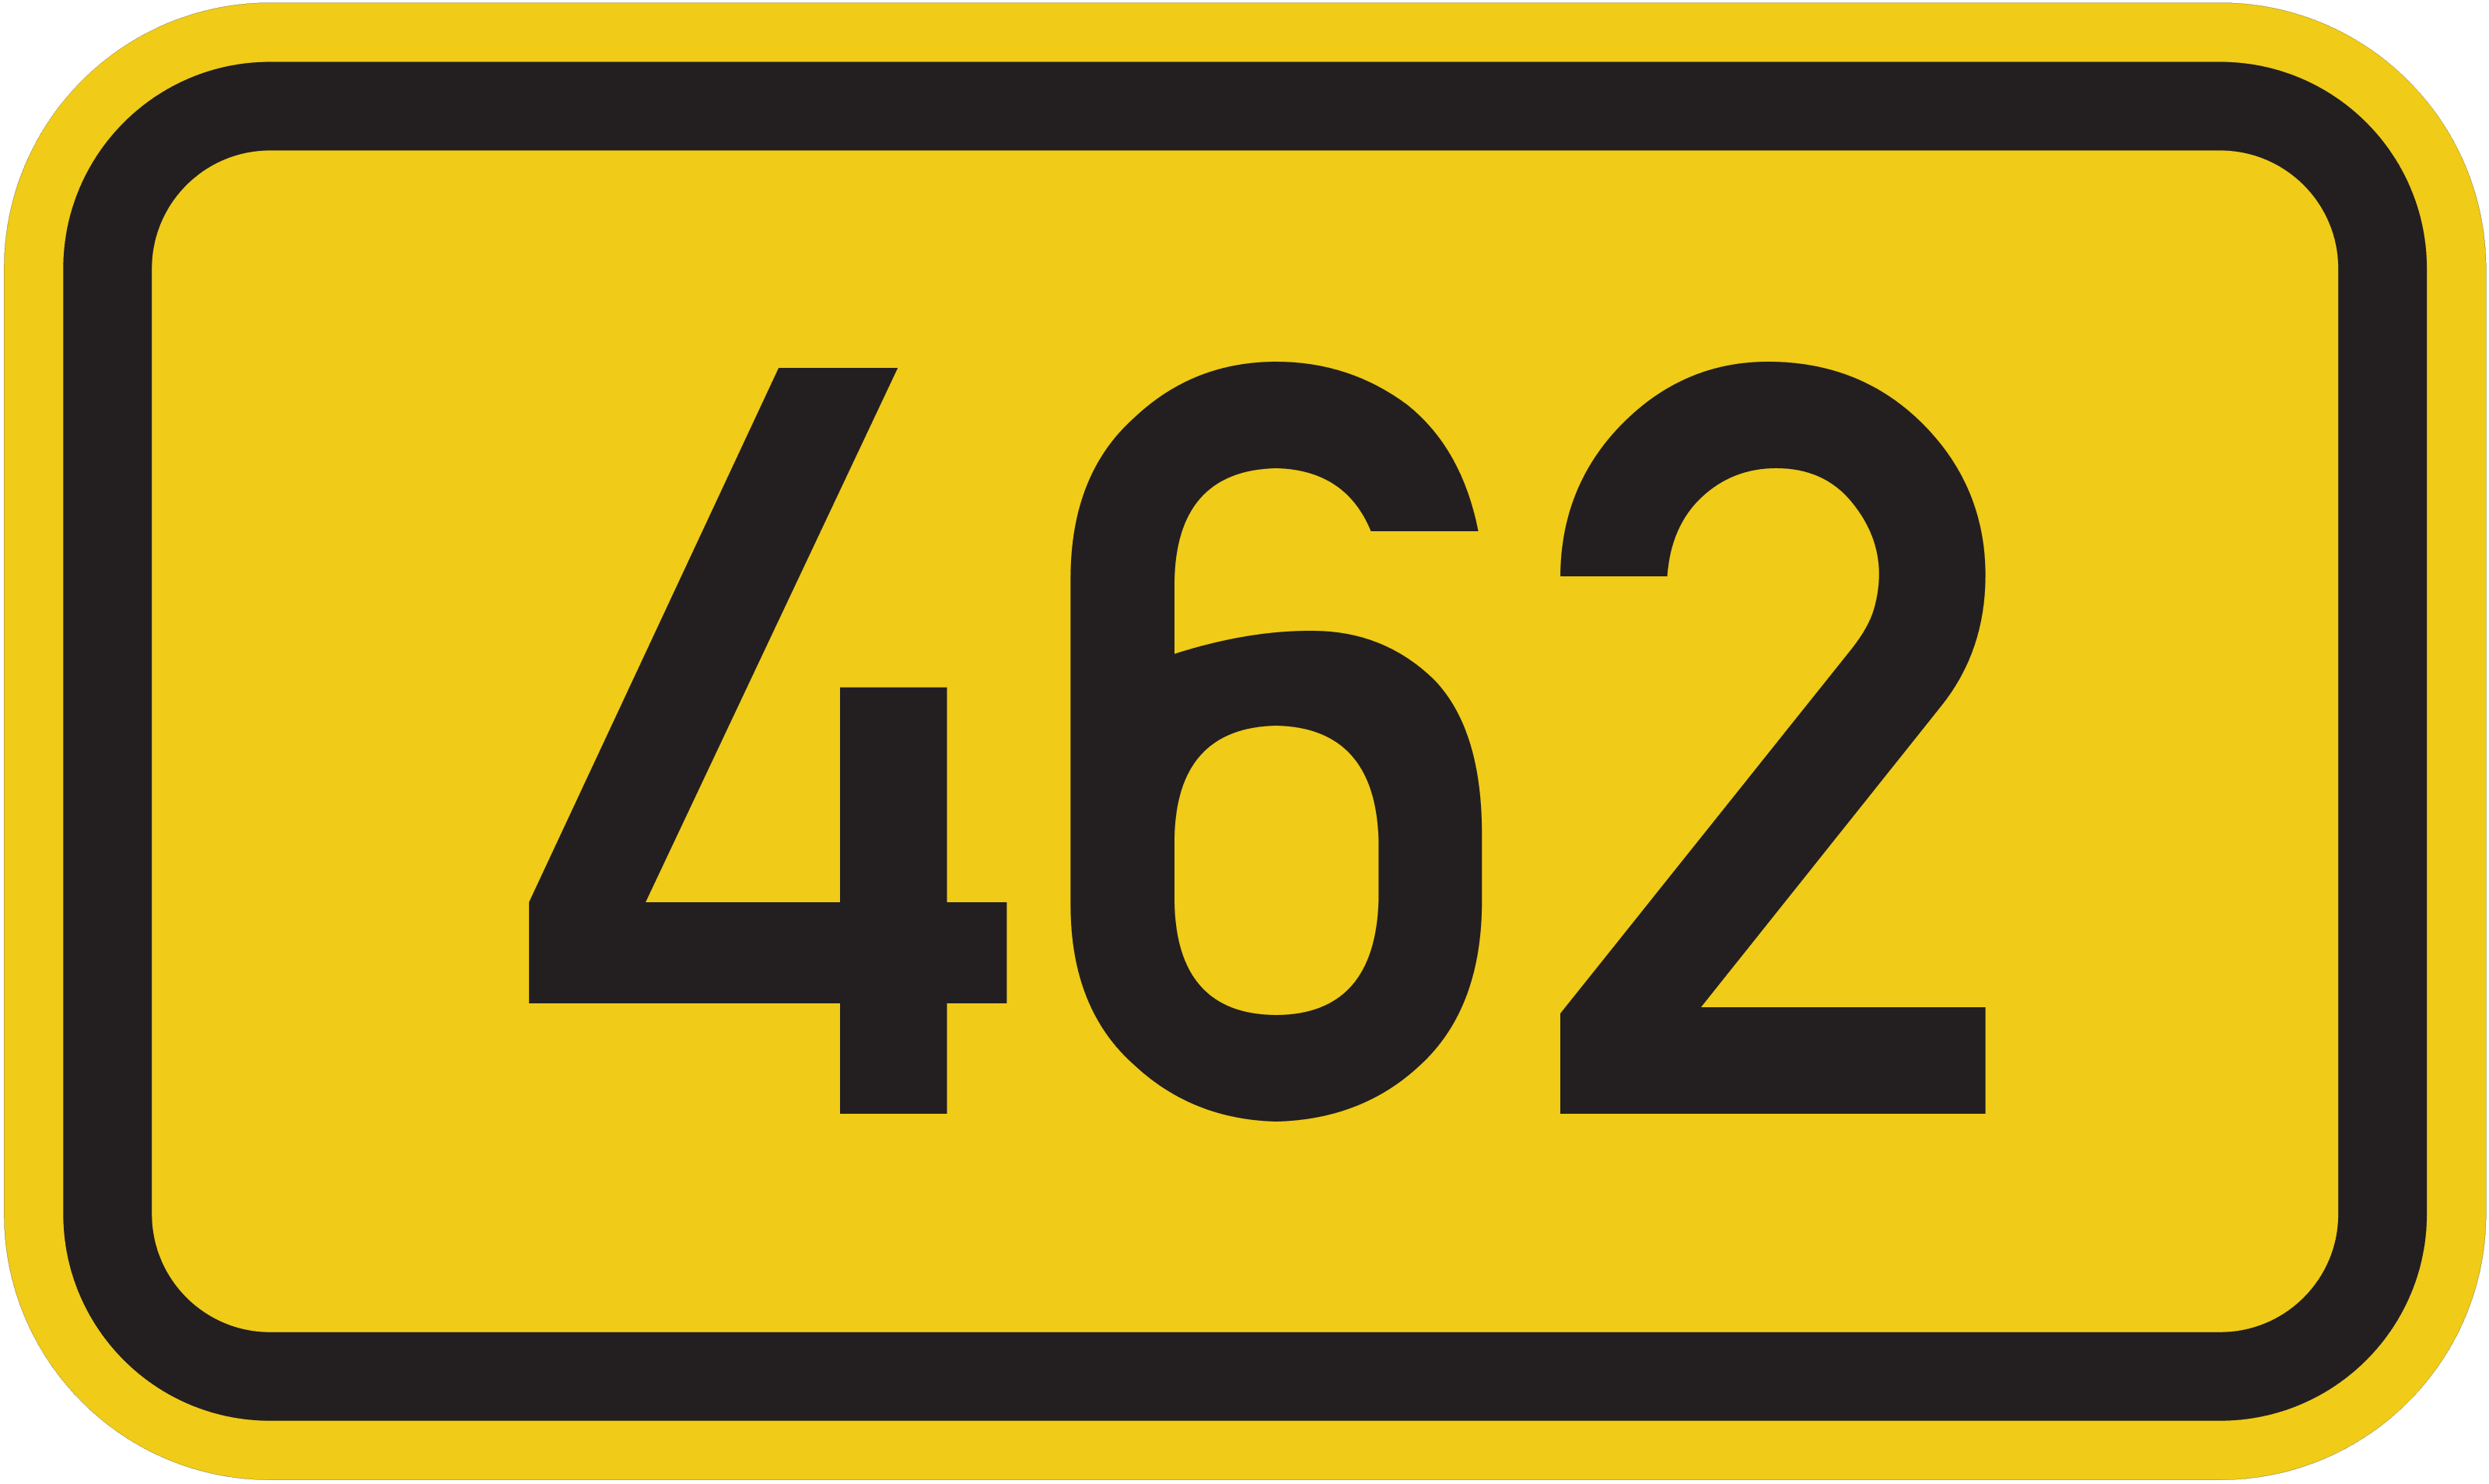 Bundesstraße B 462